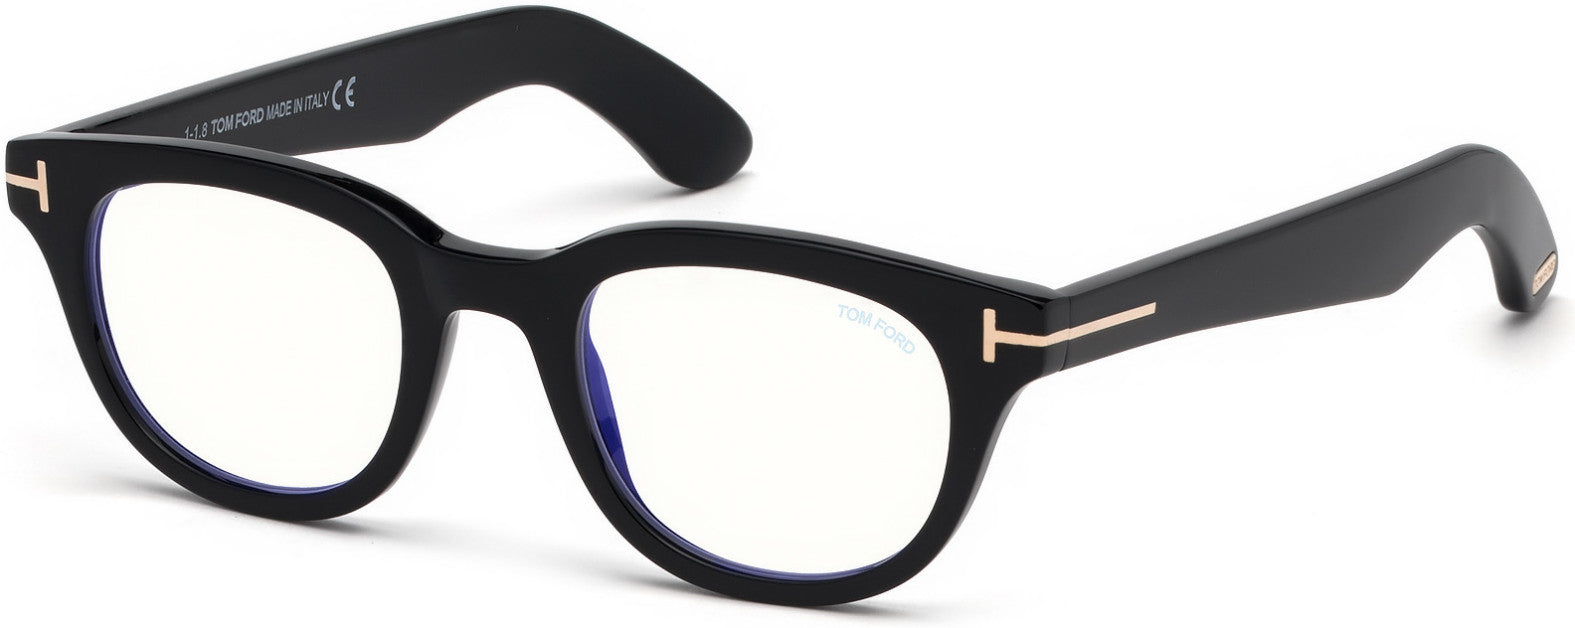 Tom Ford FT5558-B Geometric Eyeglasses 001-001 - Shiny Black, Shiny Rose Gold "t" Logo / Blue Block Lenses